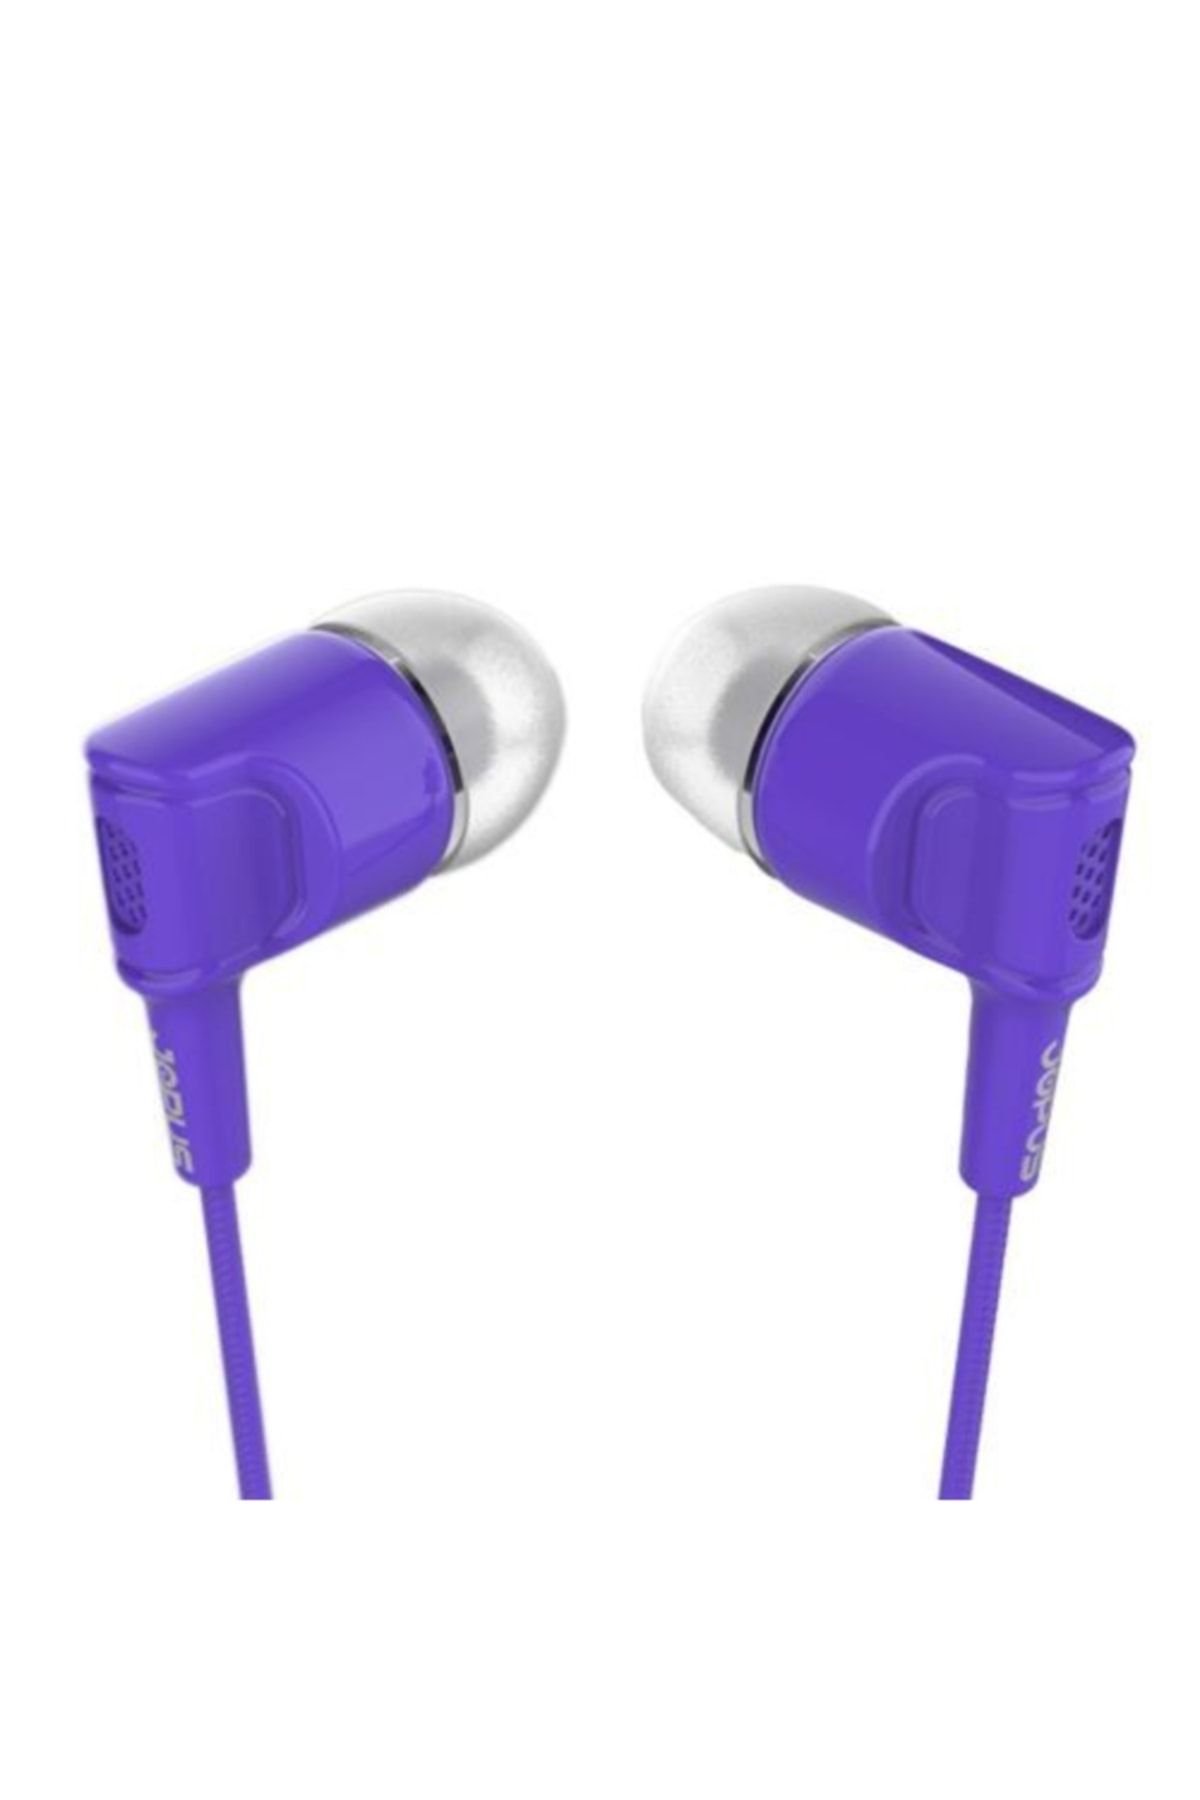 Accordion Mikrofonlu Kulak Içi Kulaklık Tuşlu Silikonlu Mor 3.5mm Universal Jak Giriş Jok52 Yeni_3